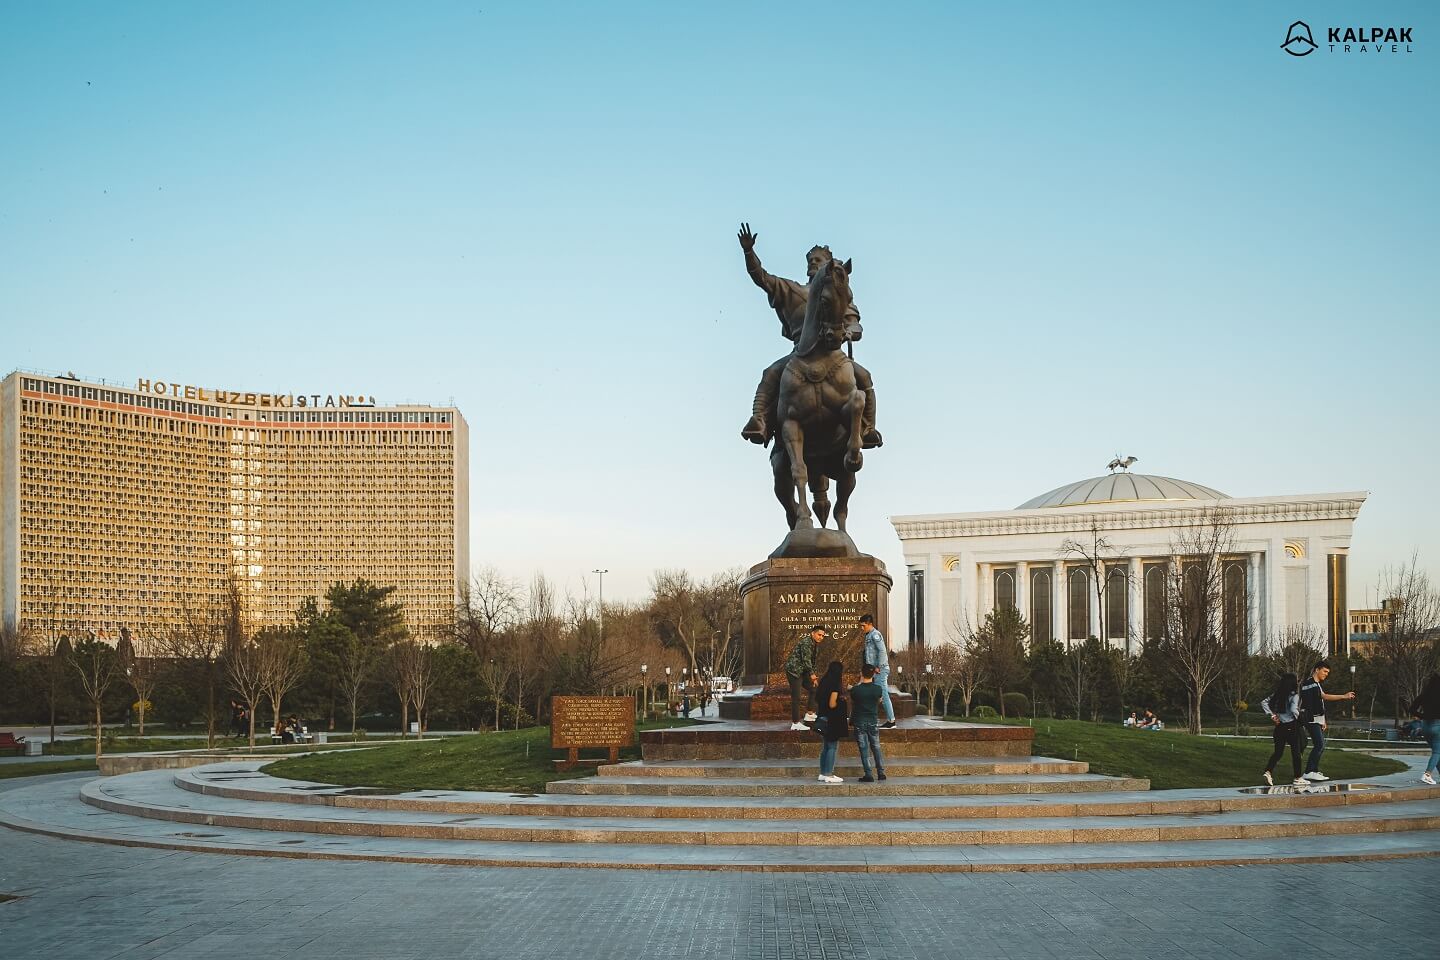 Amir Timur square in Tashkent